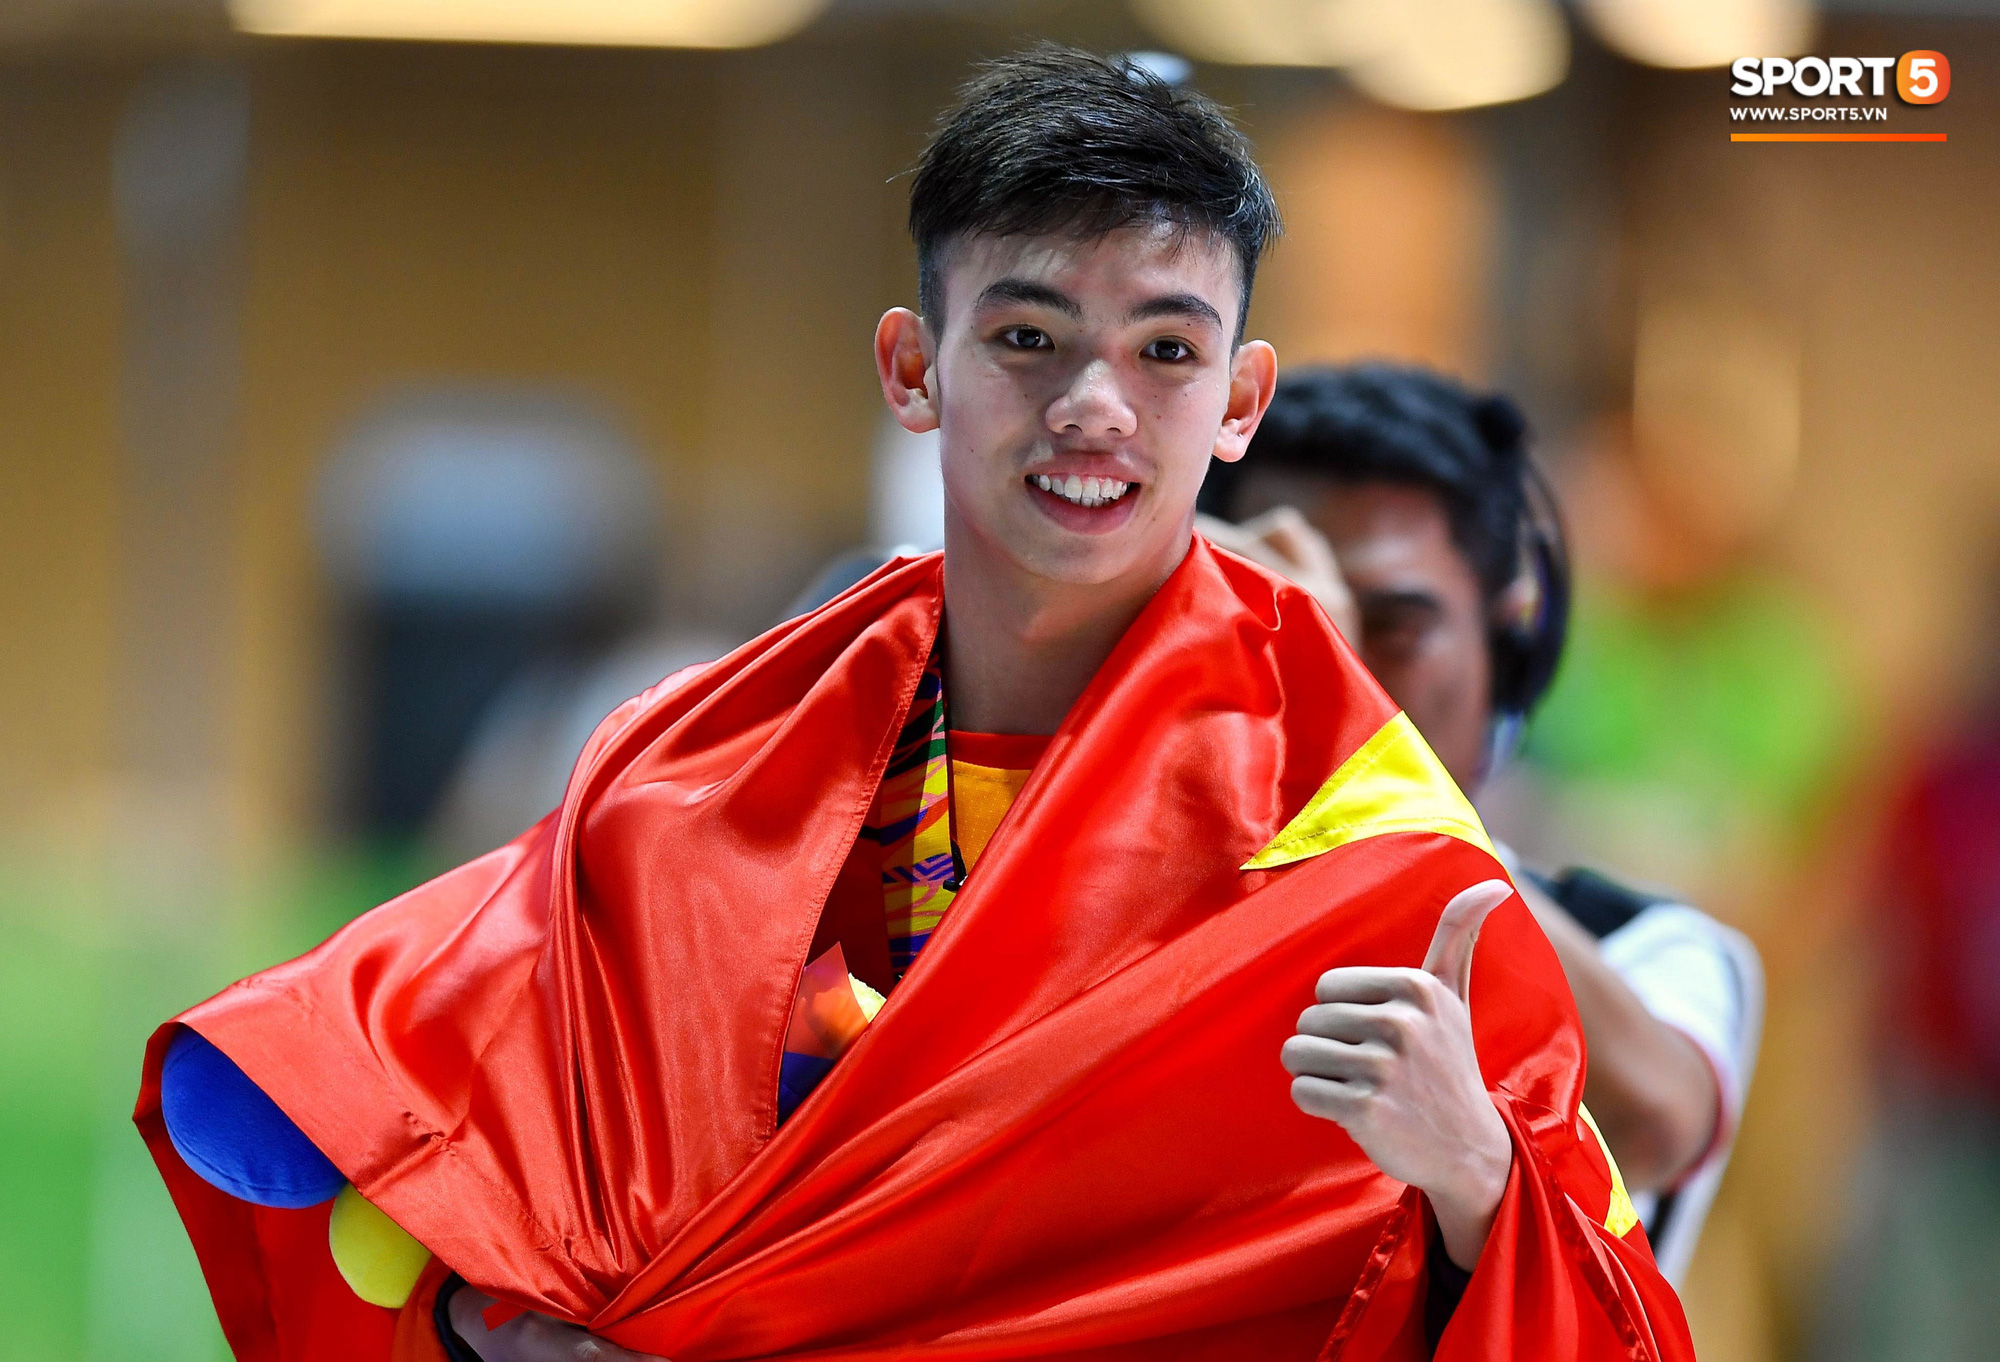 Nguyễn Huy Hoàng - Kình ngư sinh năm 2000 phá kỉ lục SEA Games và mở hàng huy chương vàng cho đội bơi Việt Nam - Ảnh 6.